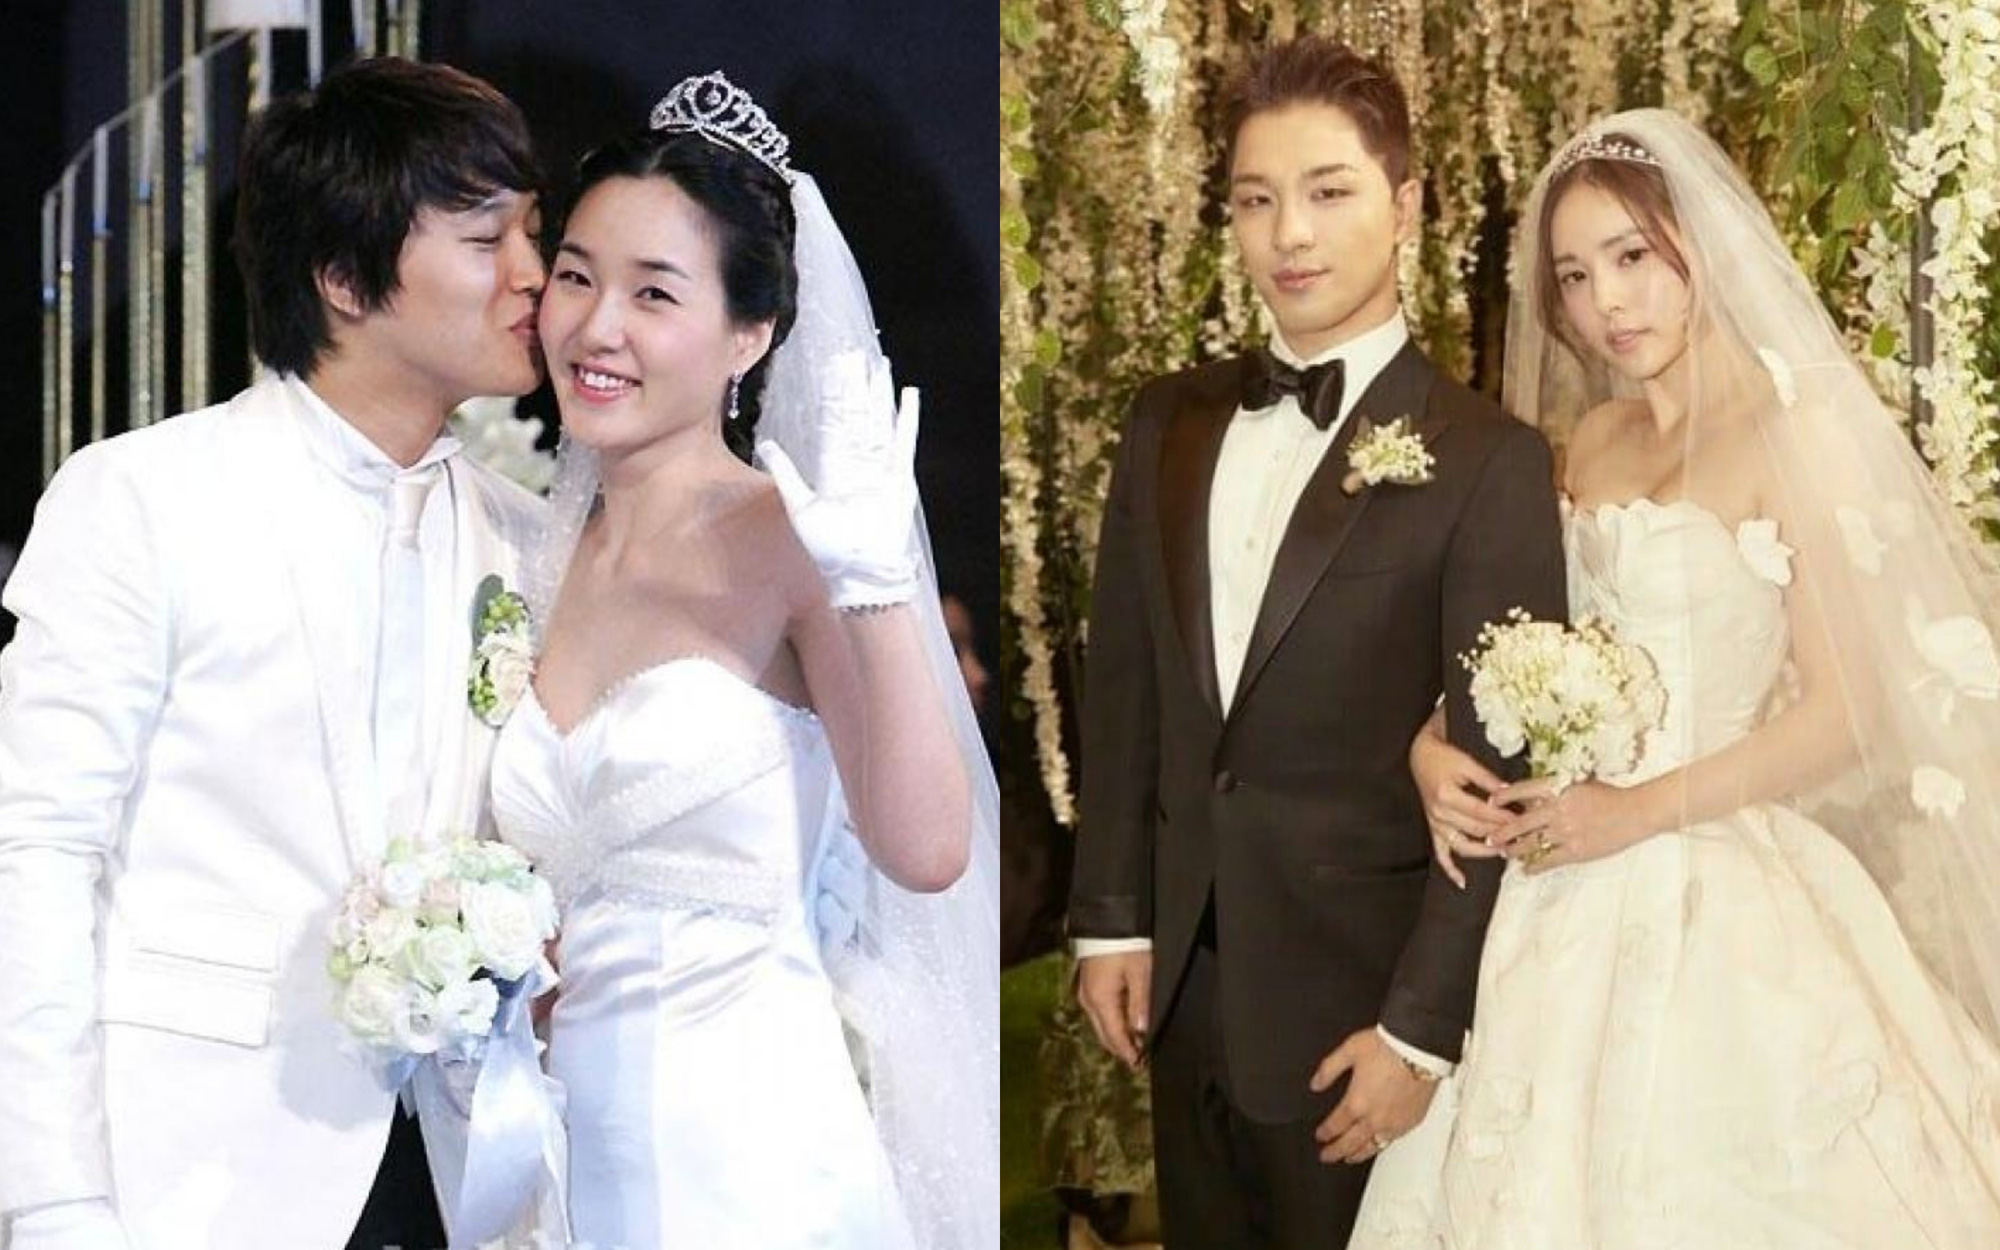 Sao Hàn kết hôn với mối tình đầu: Tài tử “Thử thách thần chết” chung thuỷ với tình 13 năm, chuyện tình Taeyang với minh tinh hiếm có